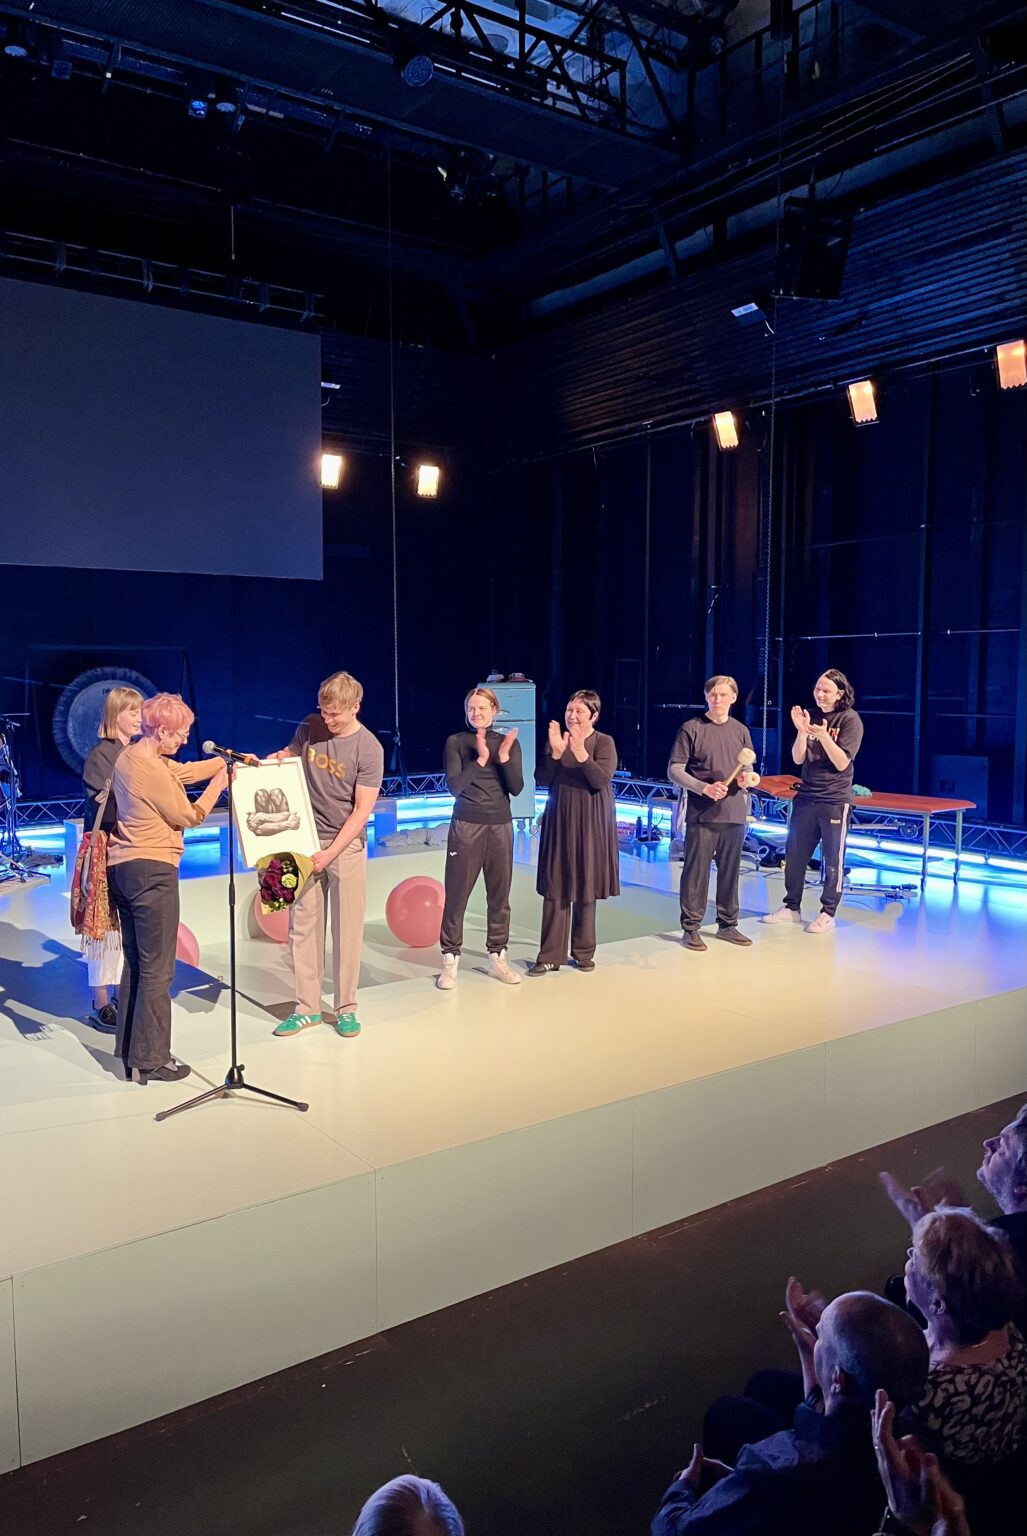 Pildil on Hea Teatri Auhinna üleandmine, mis toimus Sakala 3 teatrimaja laval. Pildil annab Heili Einasto Rasmus Kaljujärvele üle mustvalge kunstiteose, eemal plaksutavad ülejäänud trupiliikmed.